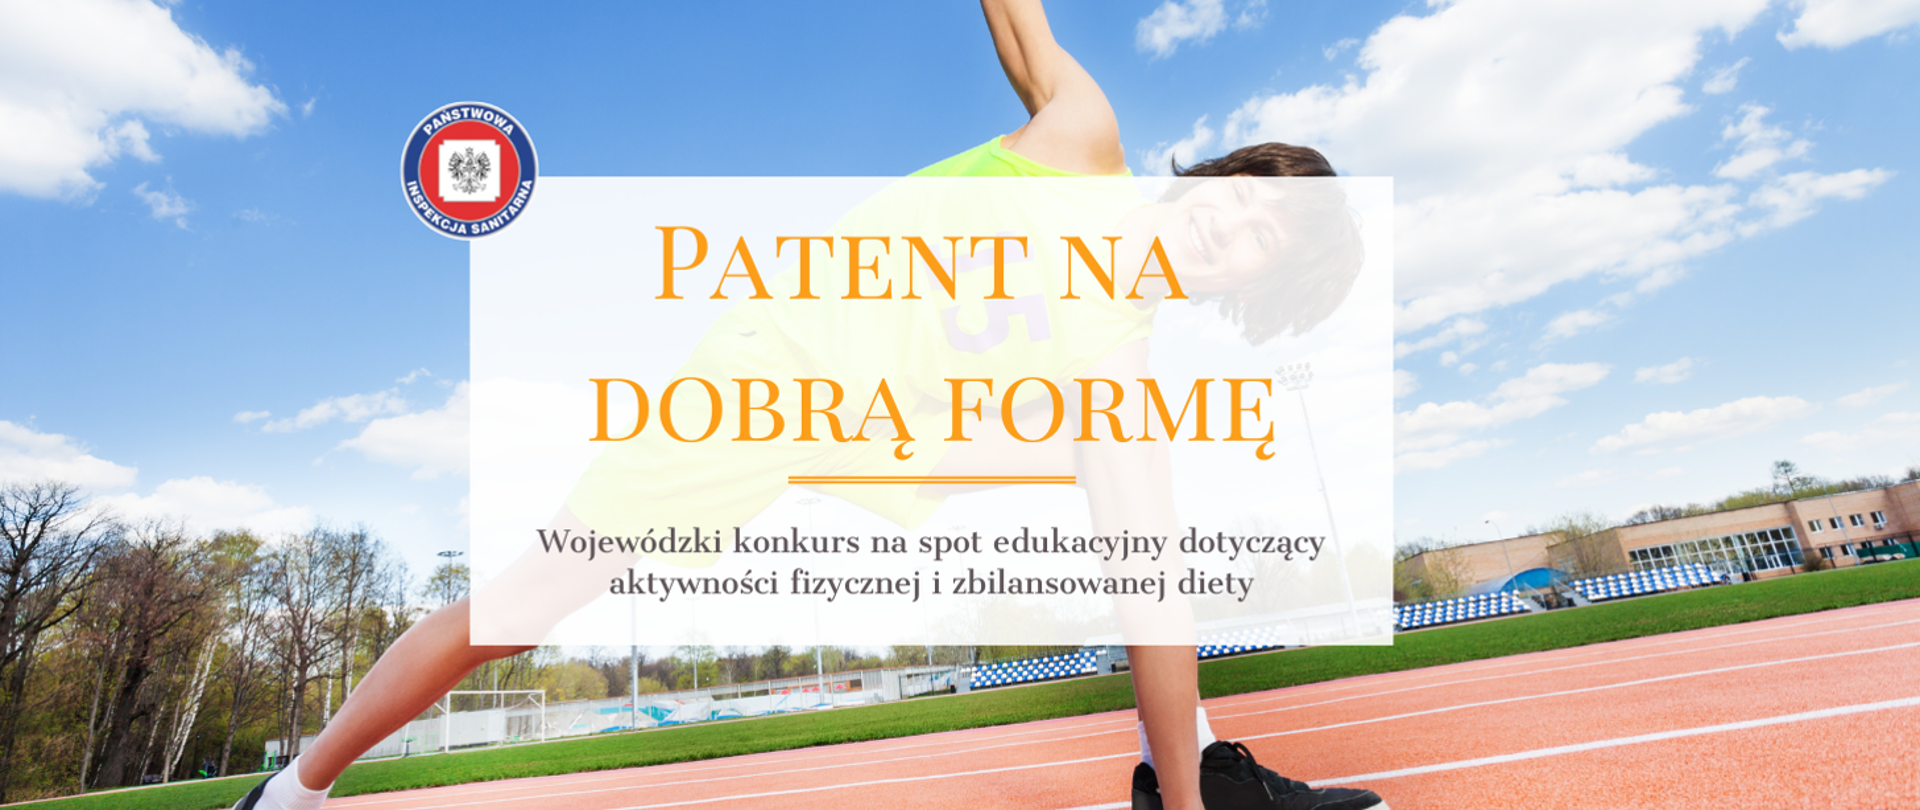 Patent na dobrą formę - Wojewódzki konkurs na spot edukacyjny dotyczący aktywności fizycznej i zbilansowanej diety